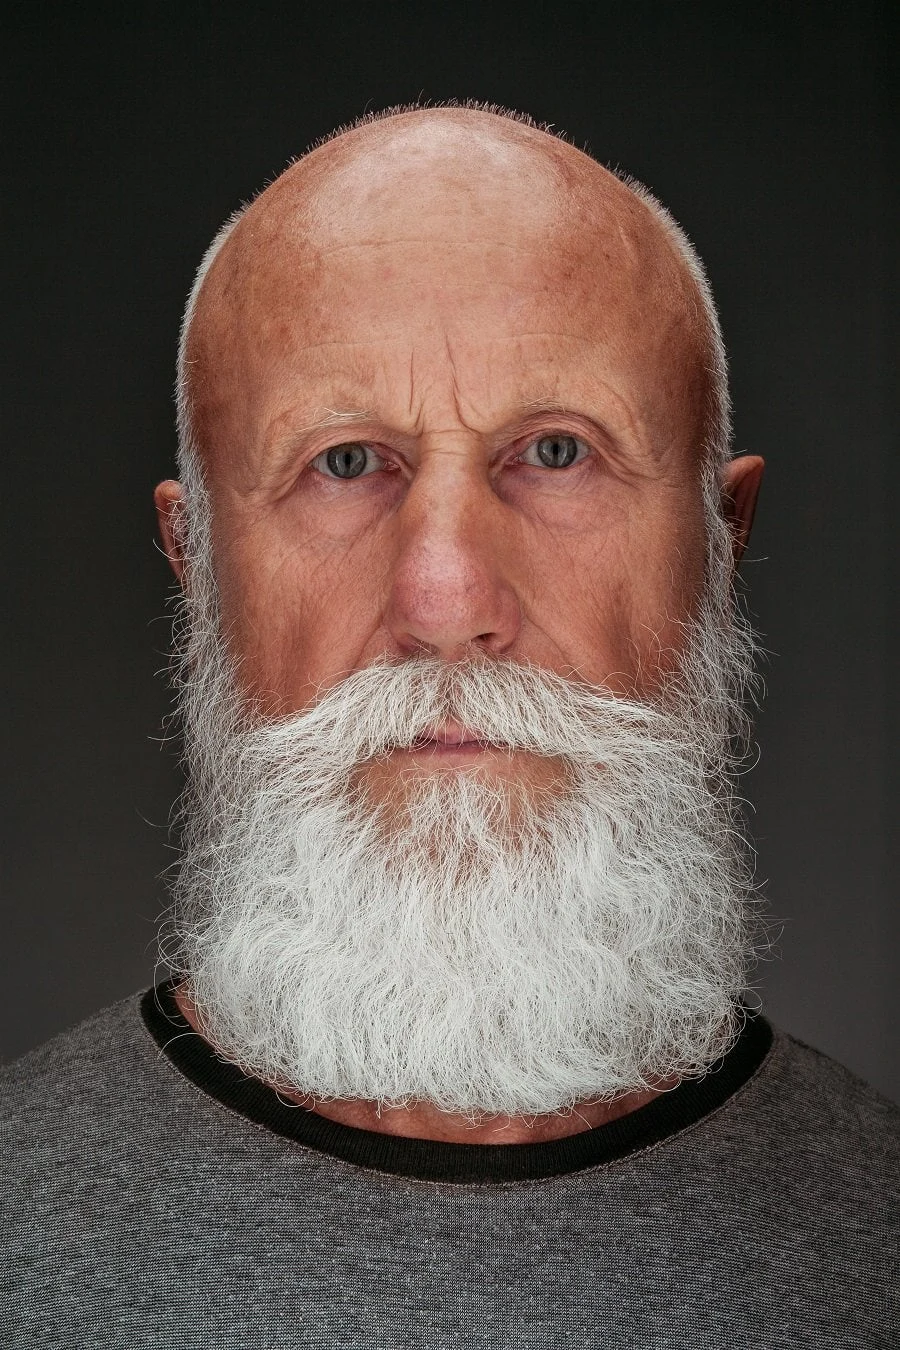 beard style for older bald men